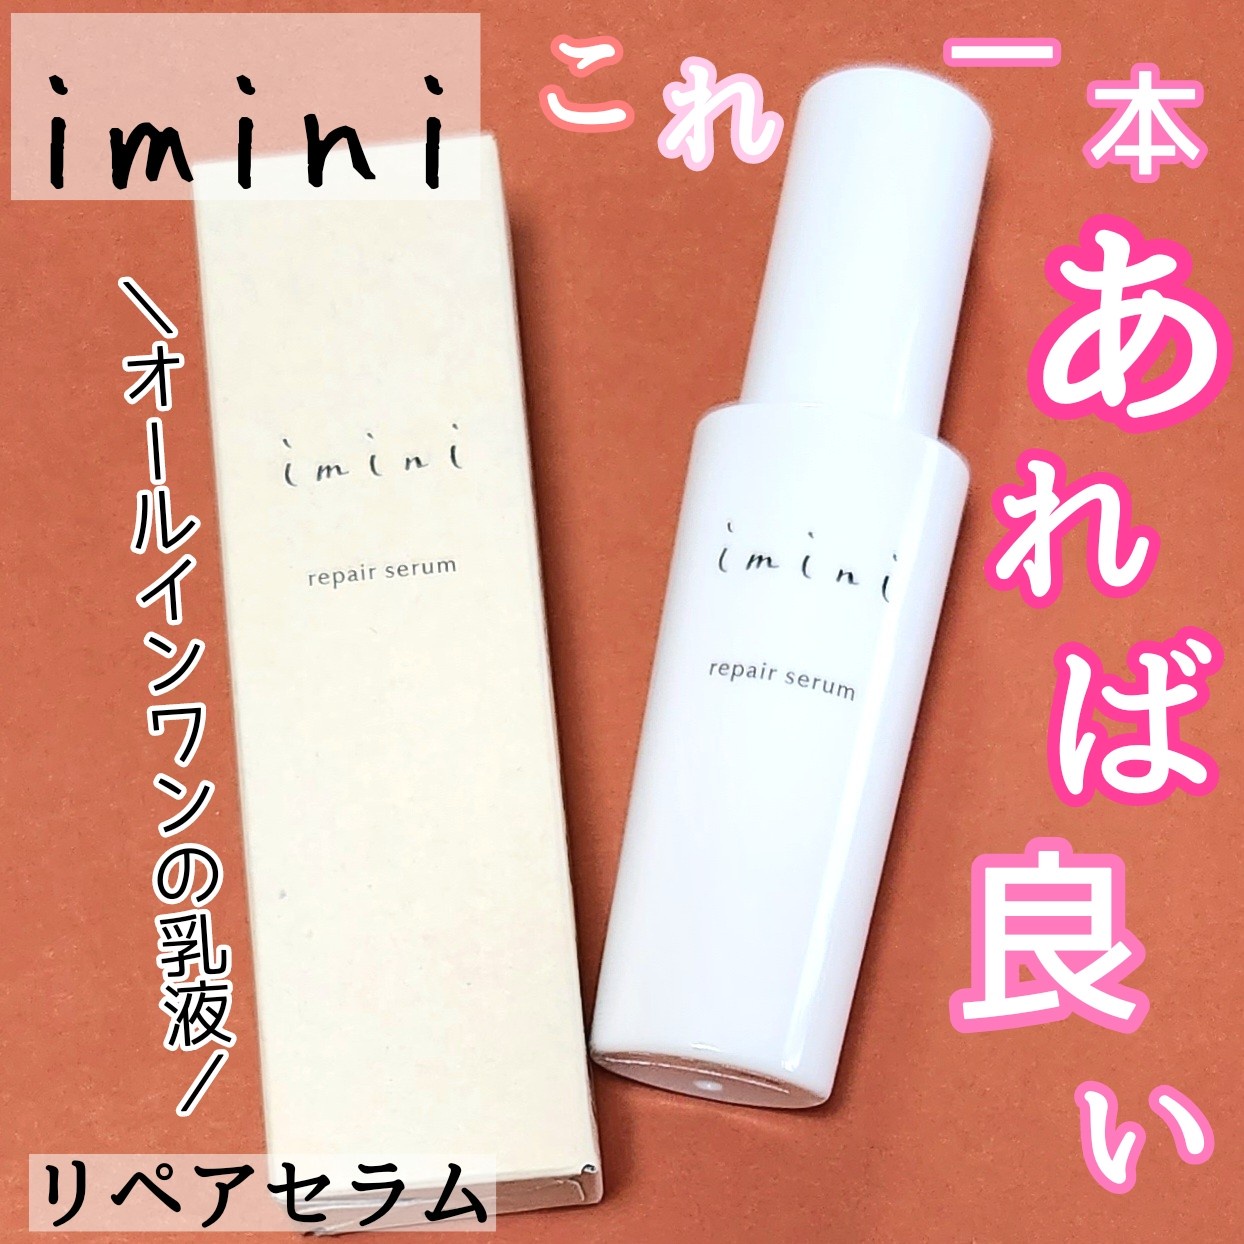 imini リペア セラム 50ml 【超ポイントバック祭】 - 乳液・ミルク